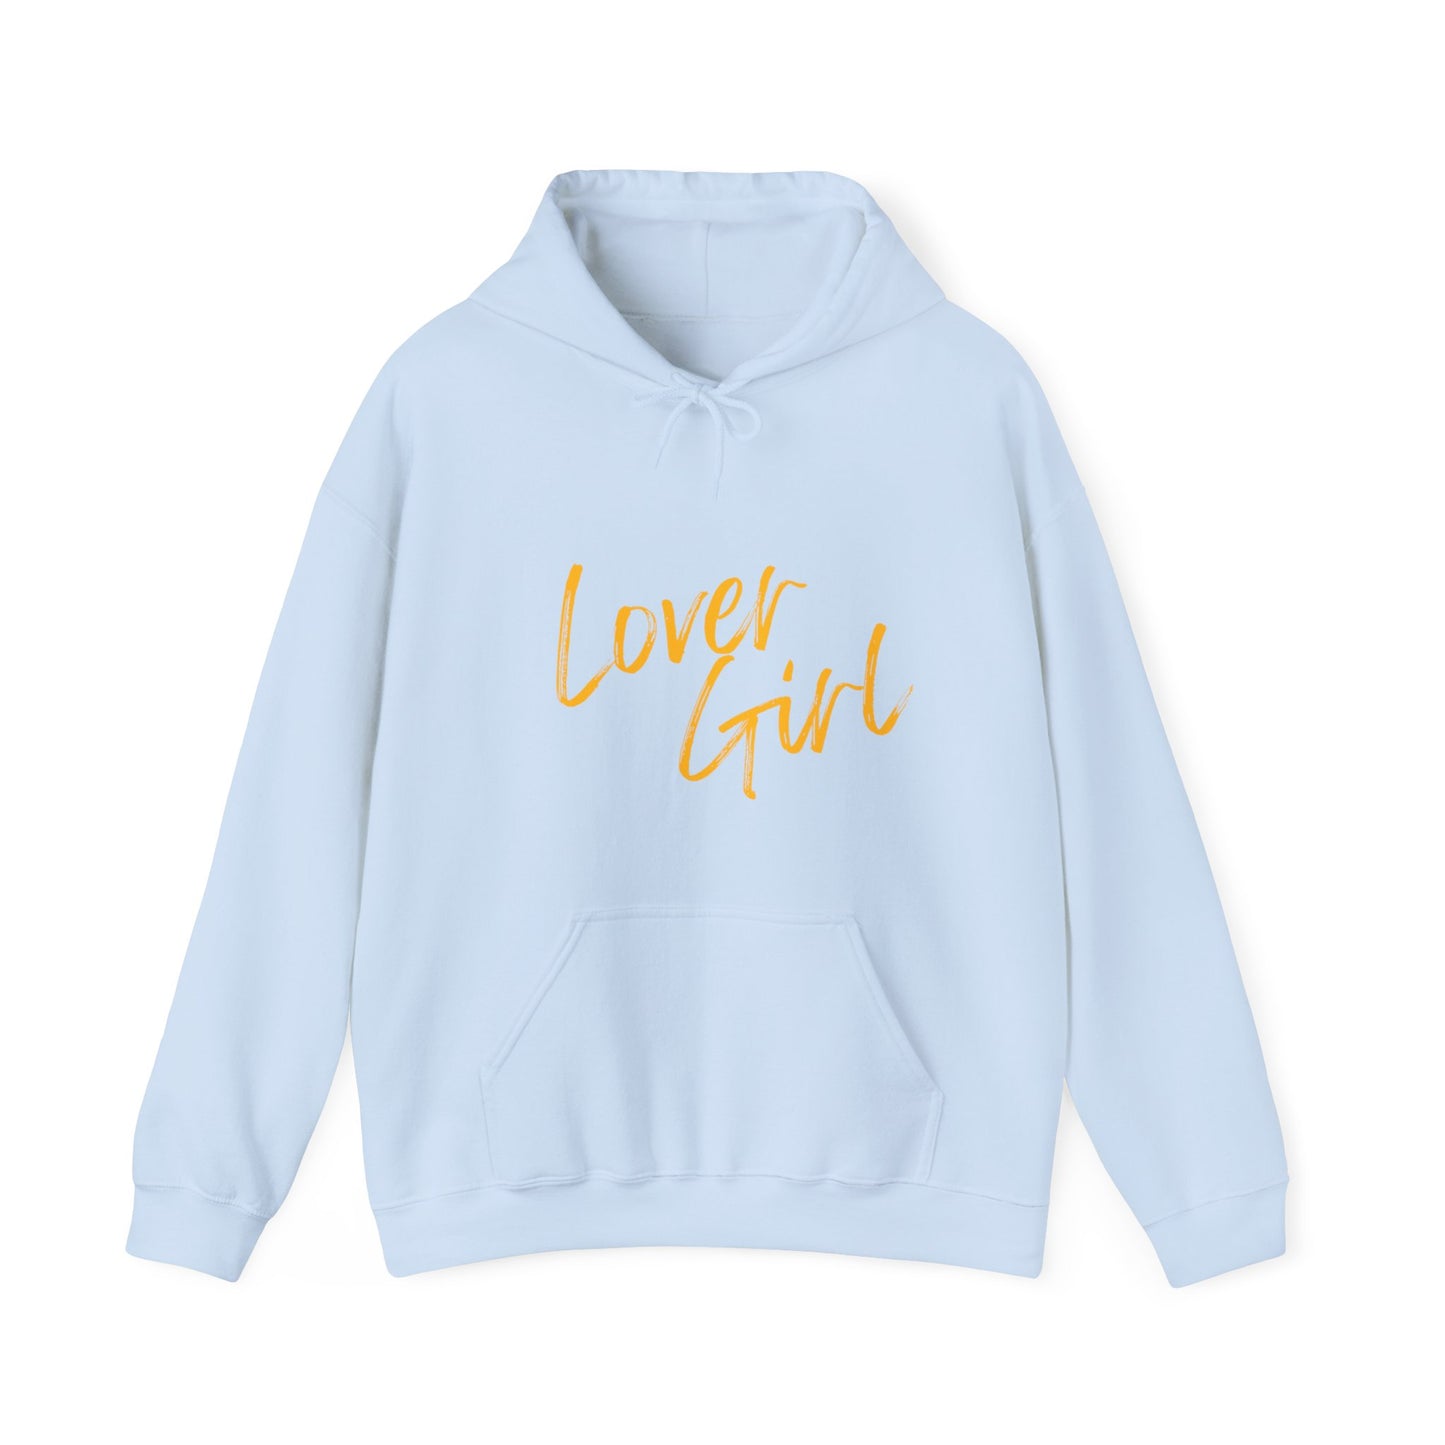 Lover girl Hooded Sweatshirt